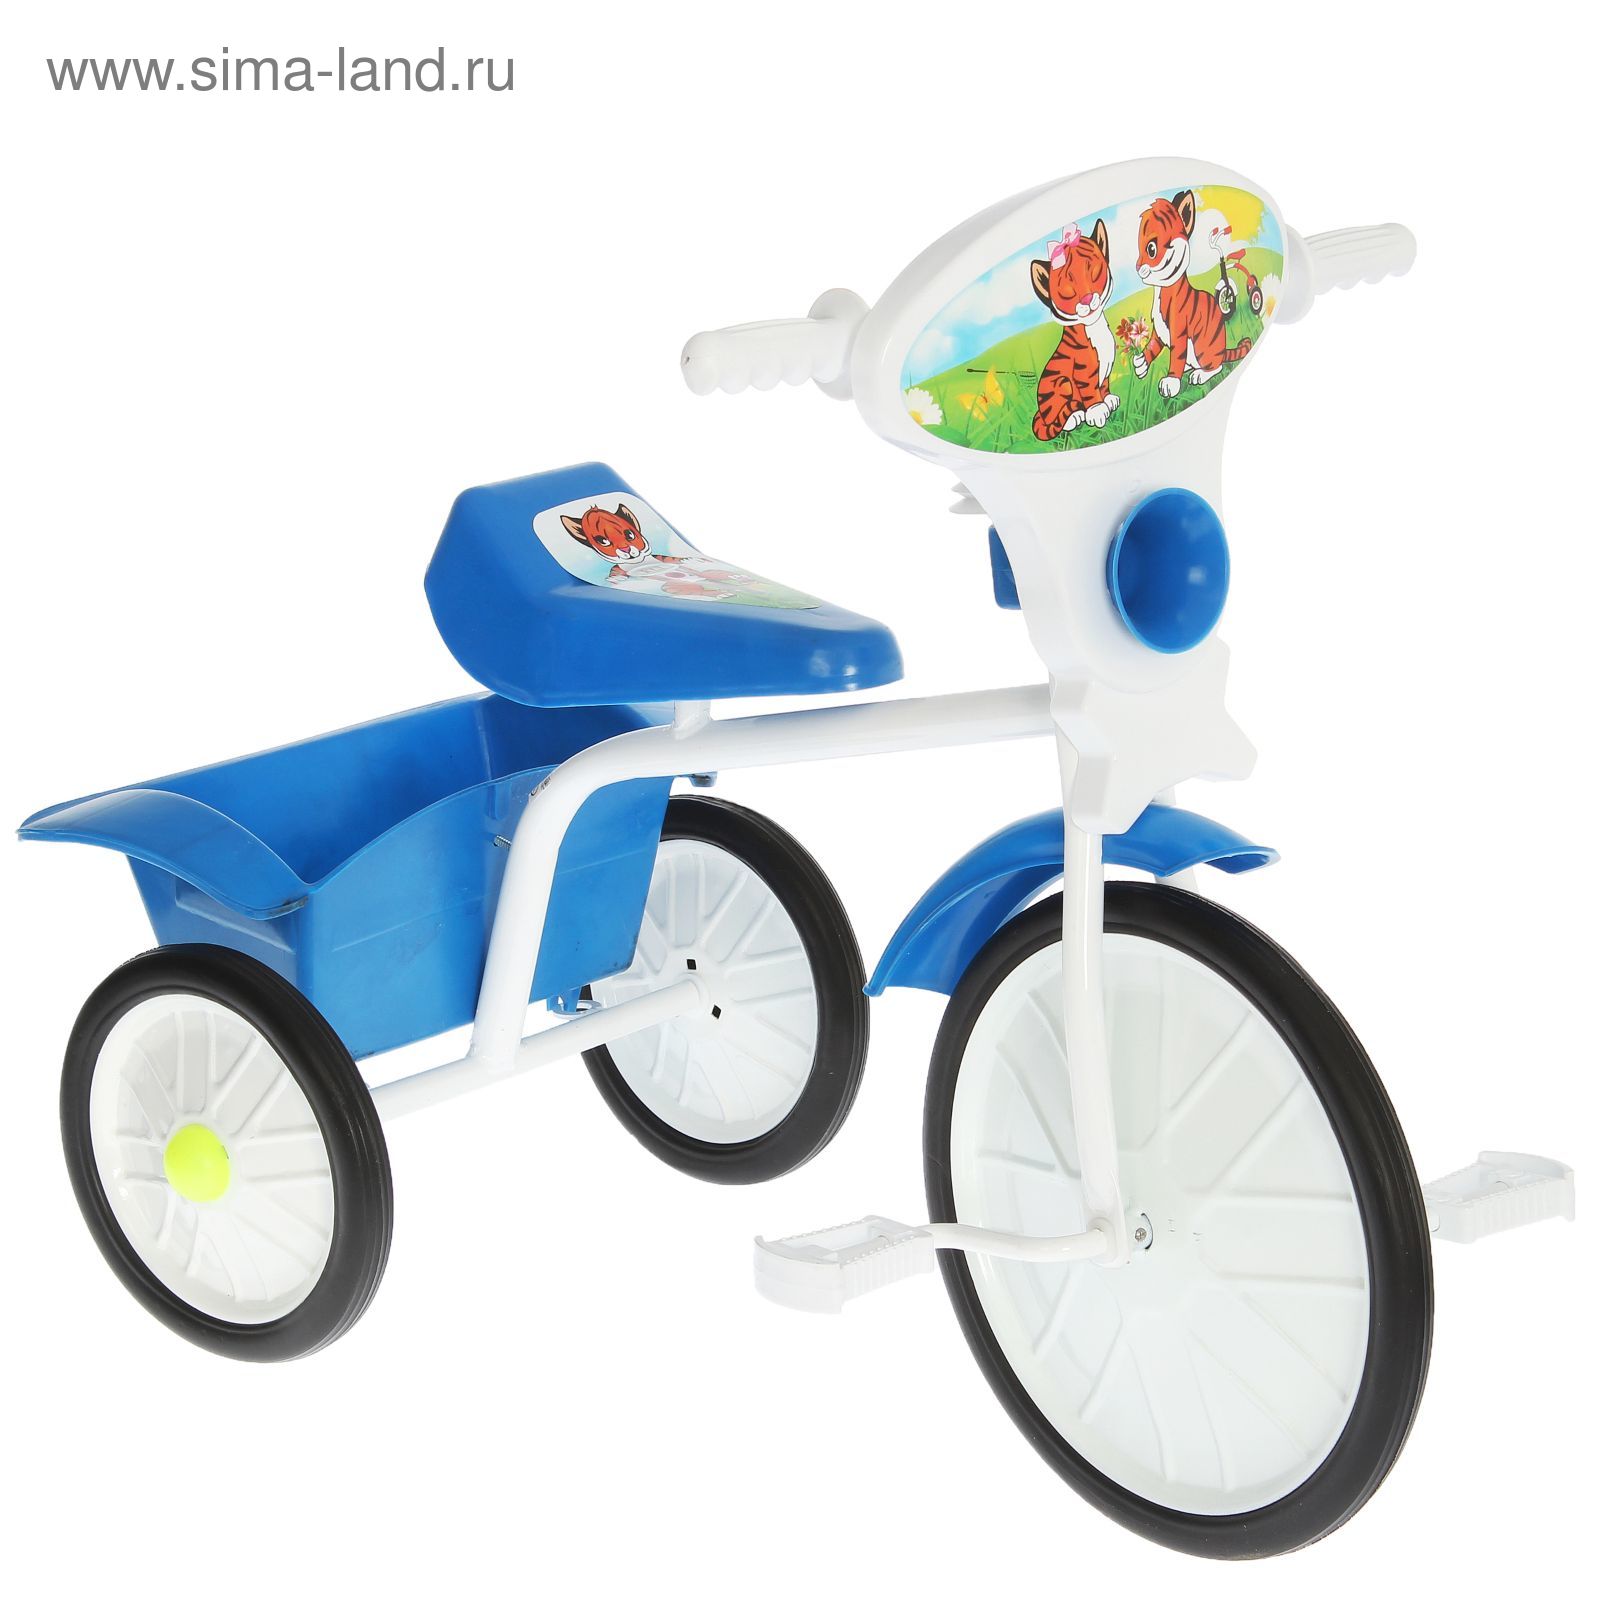 Велосипед трехколесный  "Малыш"  05, цвет синий, фасовка: 2шт.